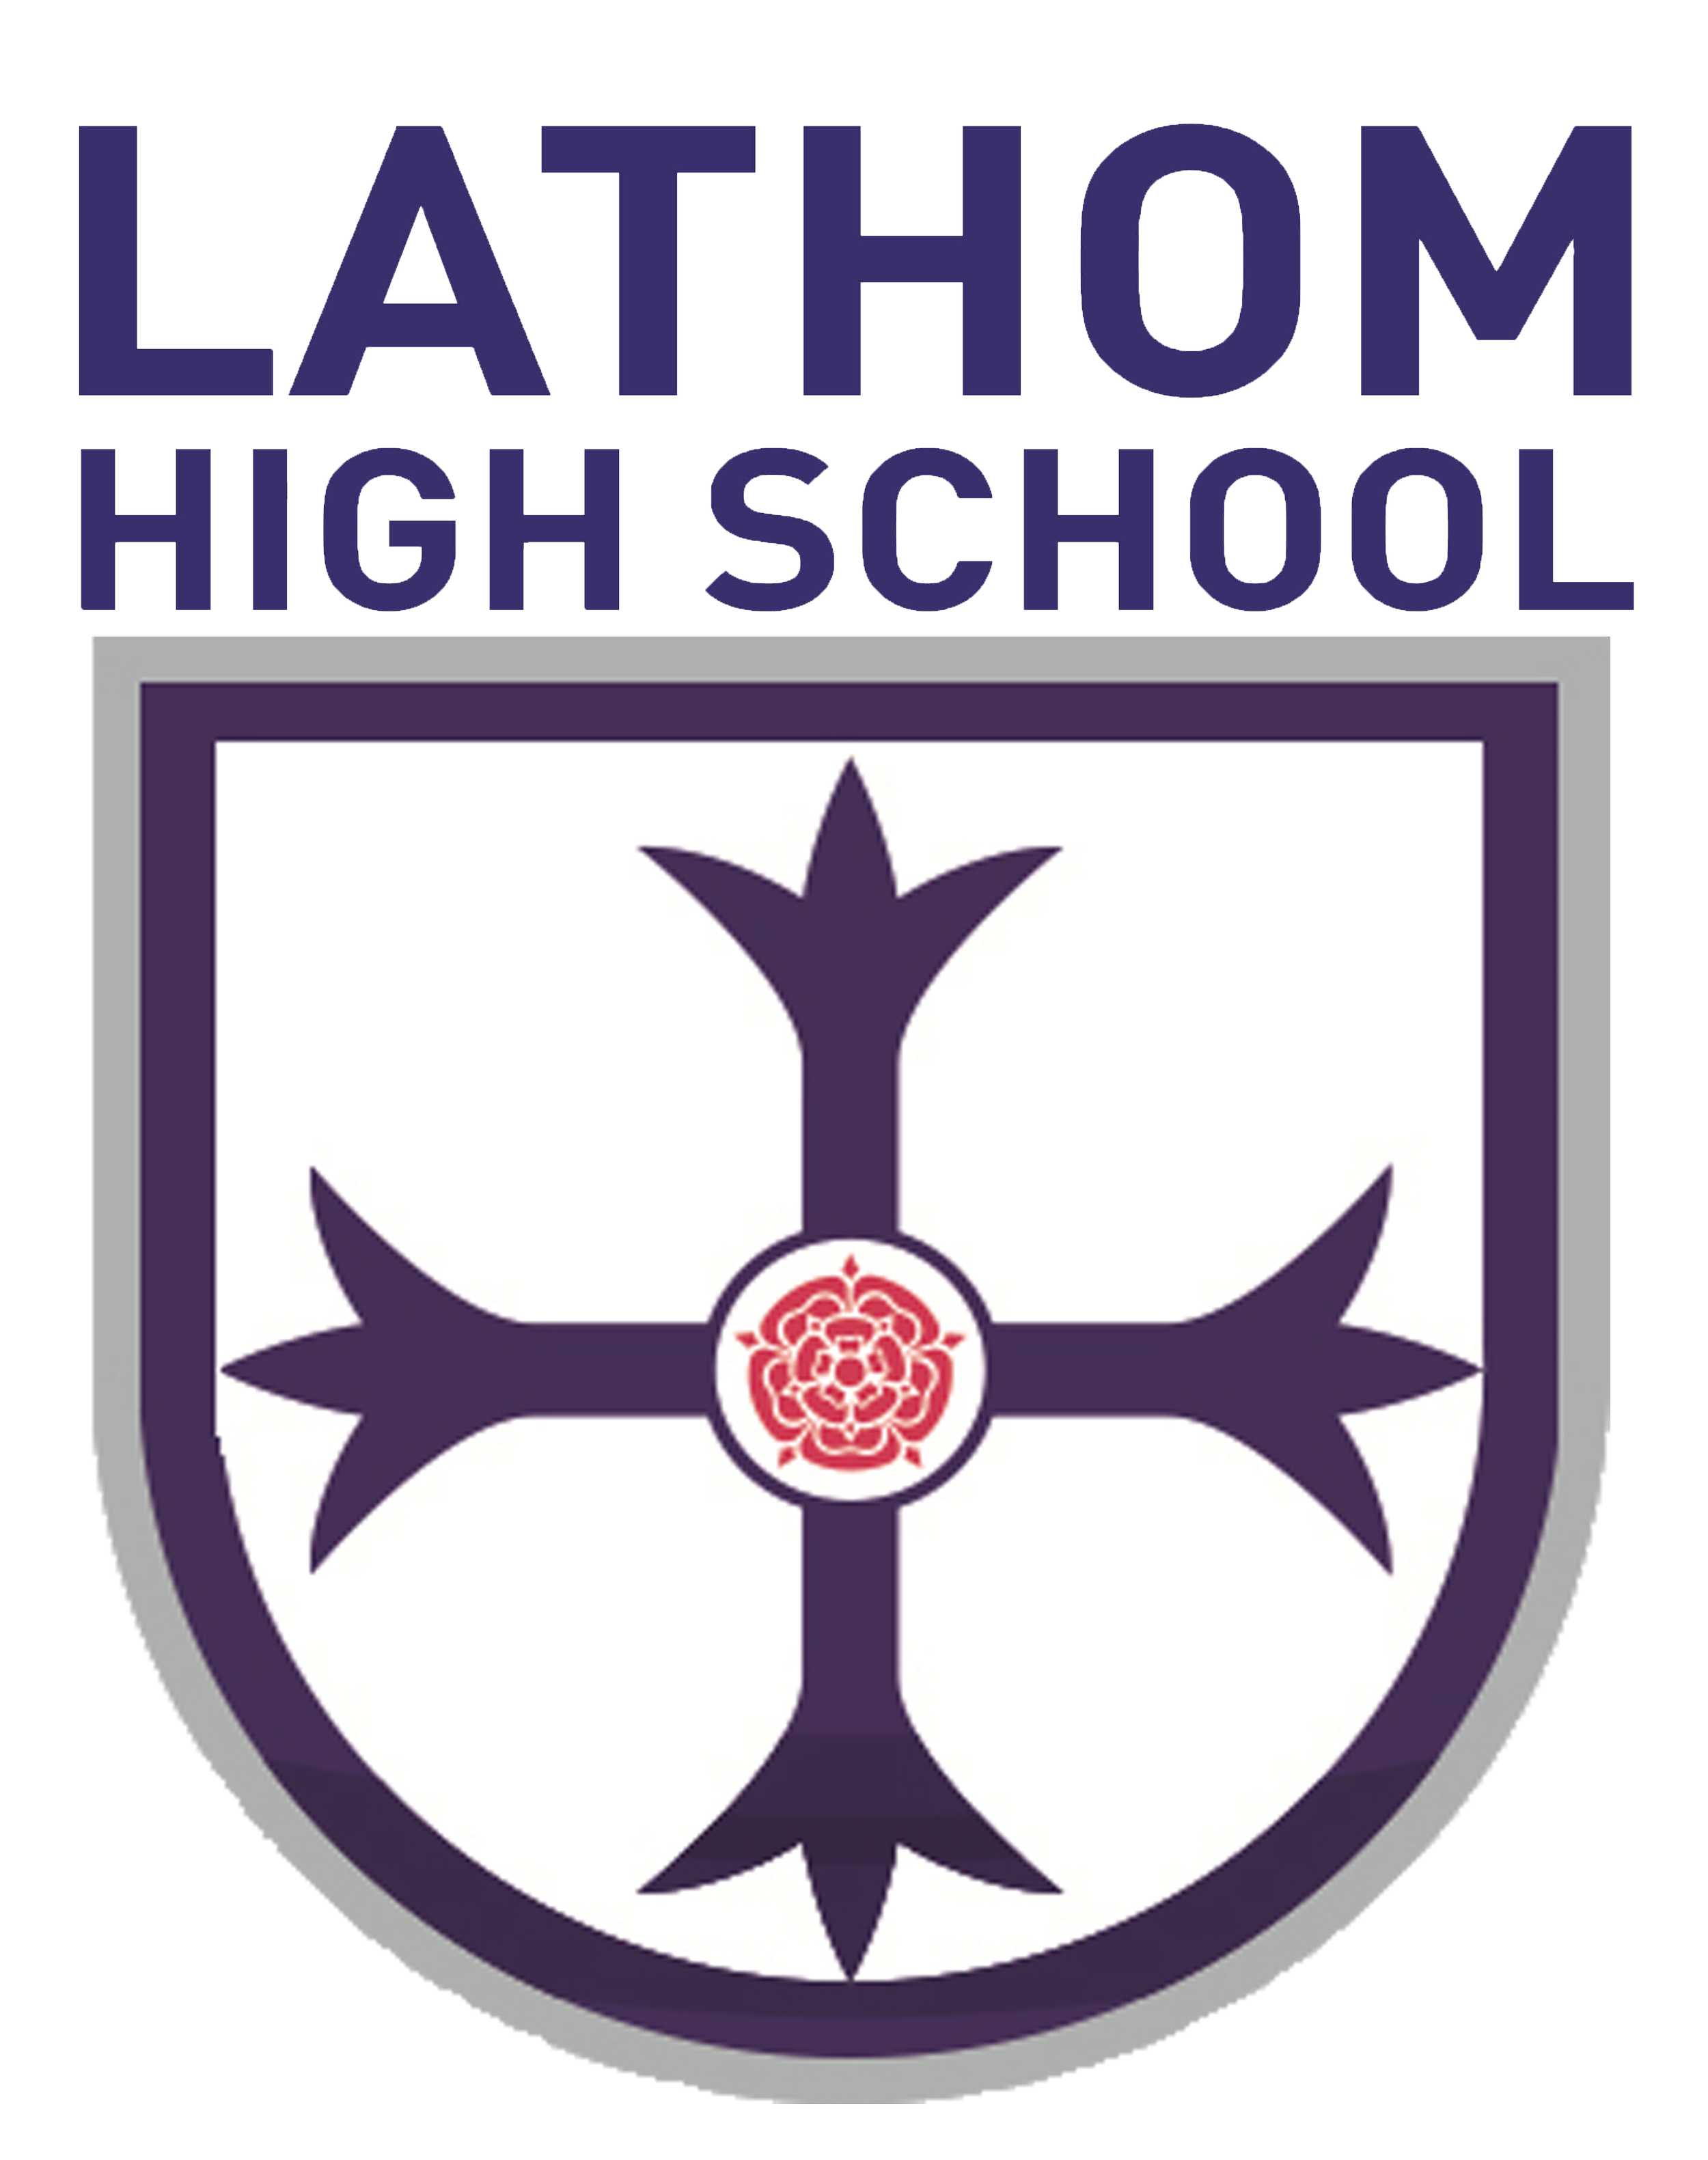 lathom high school badge.png